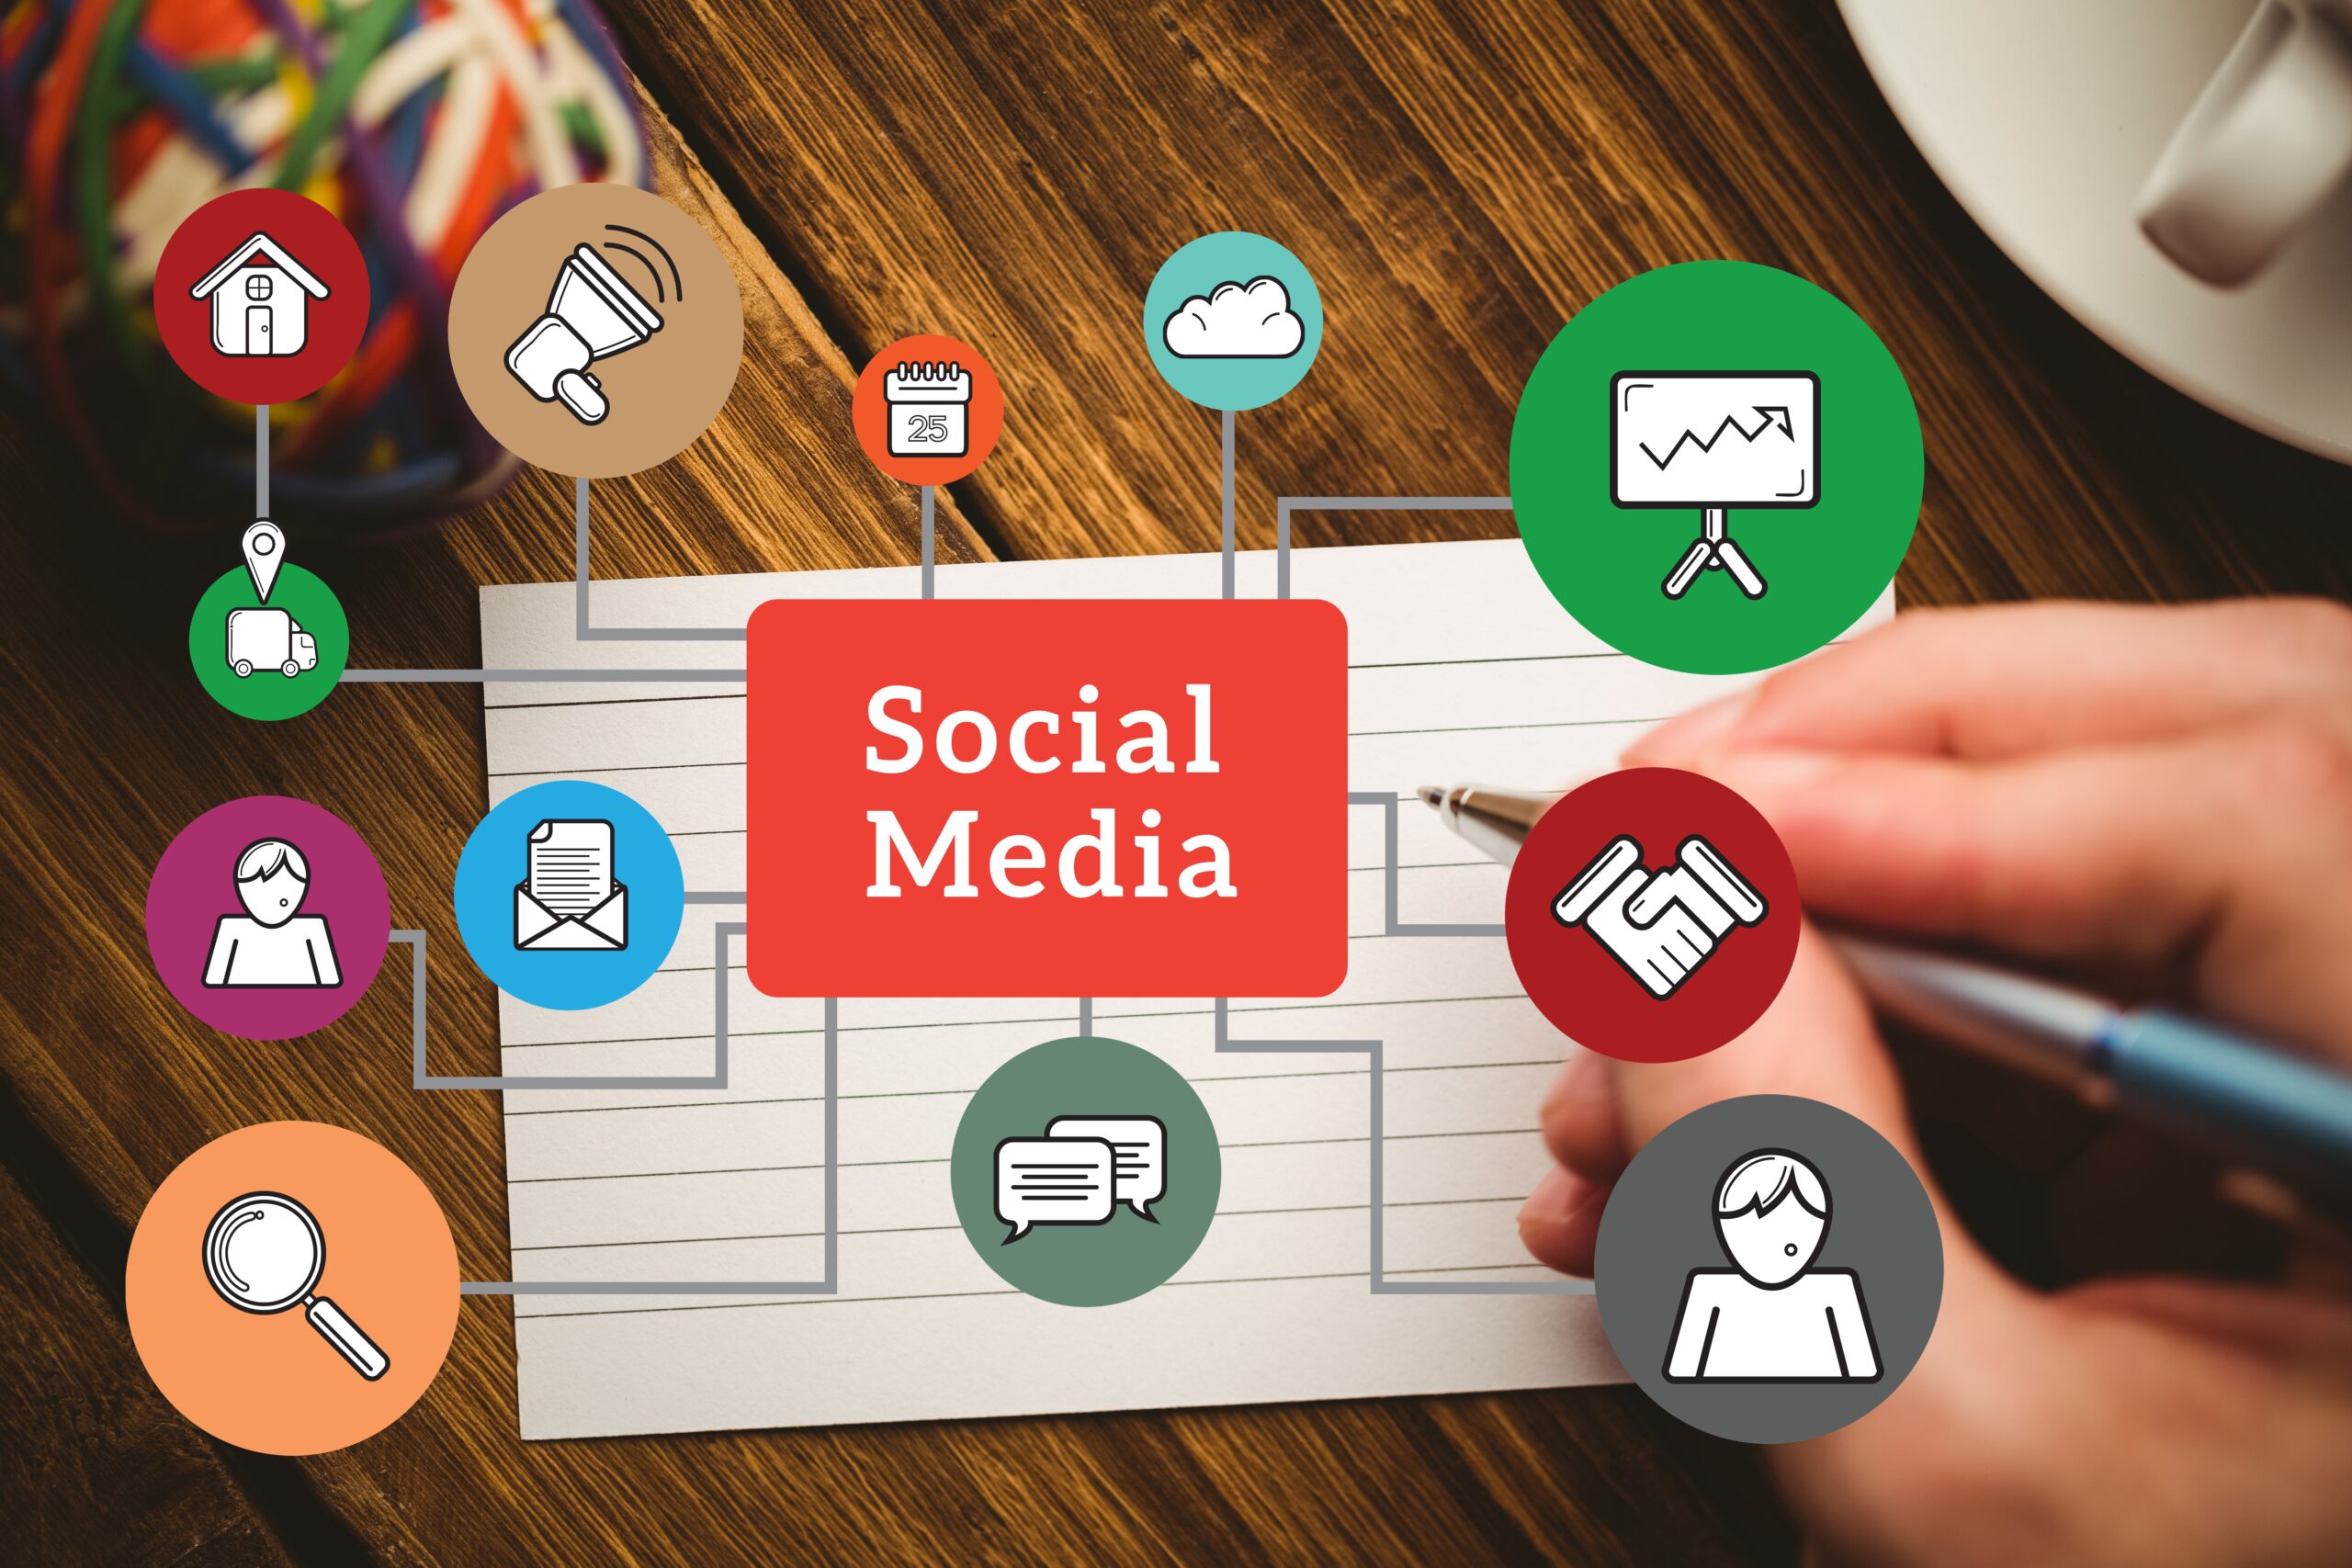 Social Media Platform for Business Goals